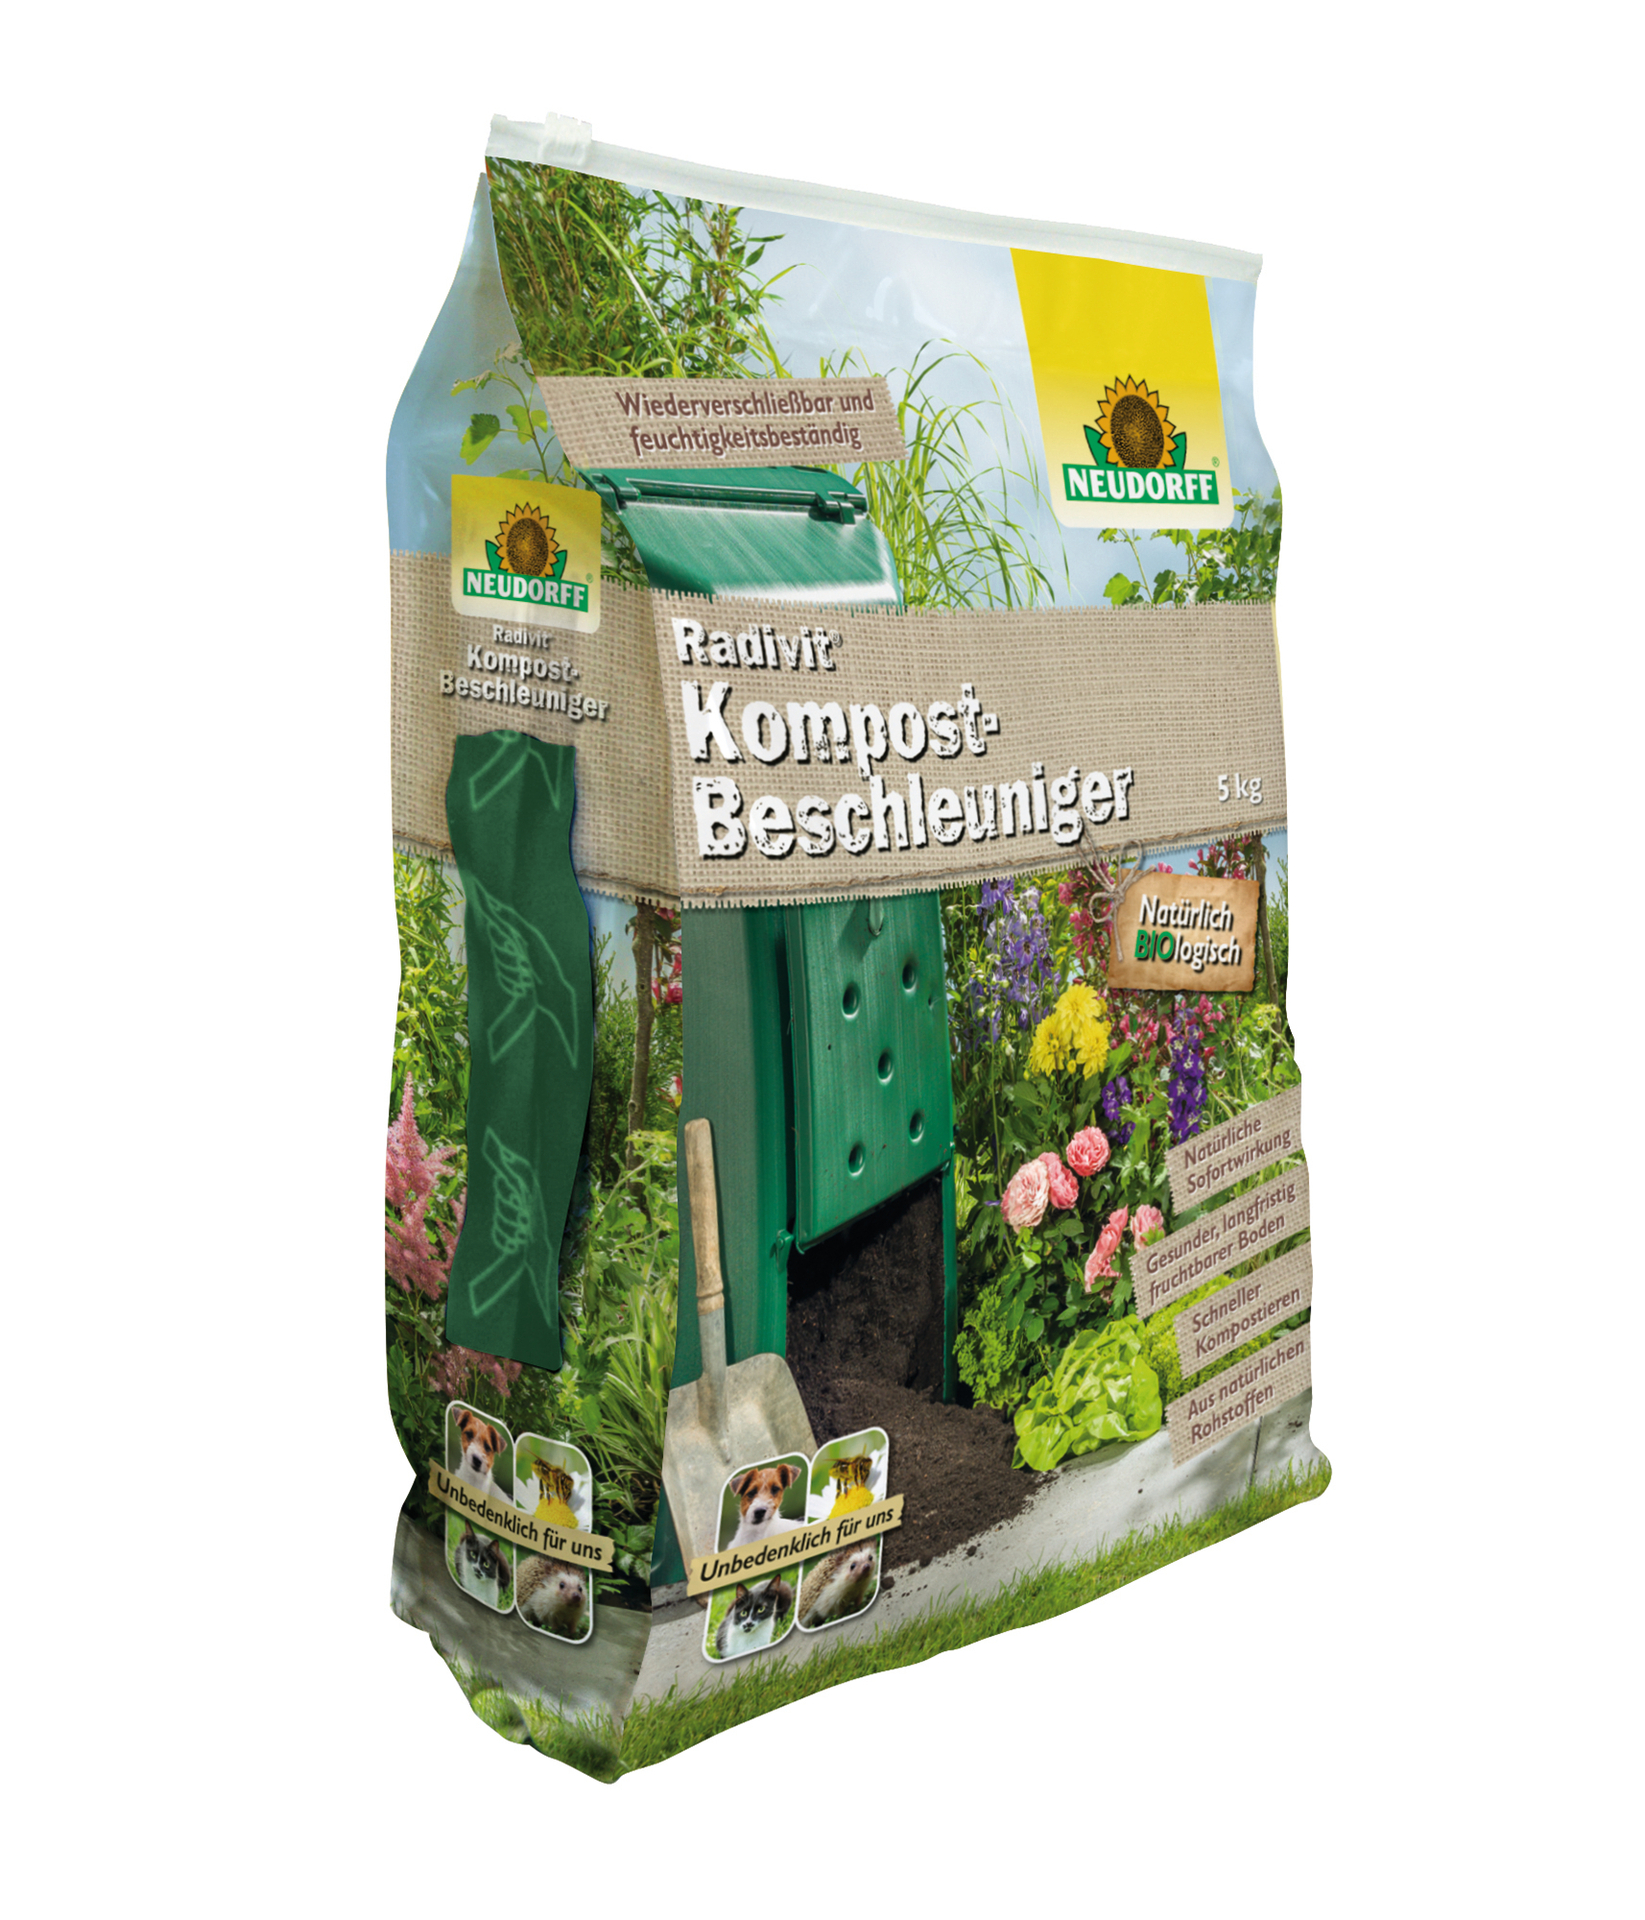 W. Neudorff GmbH KG Radivit Kompost-Beschleuniger